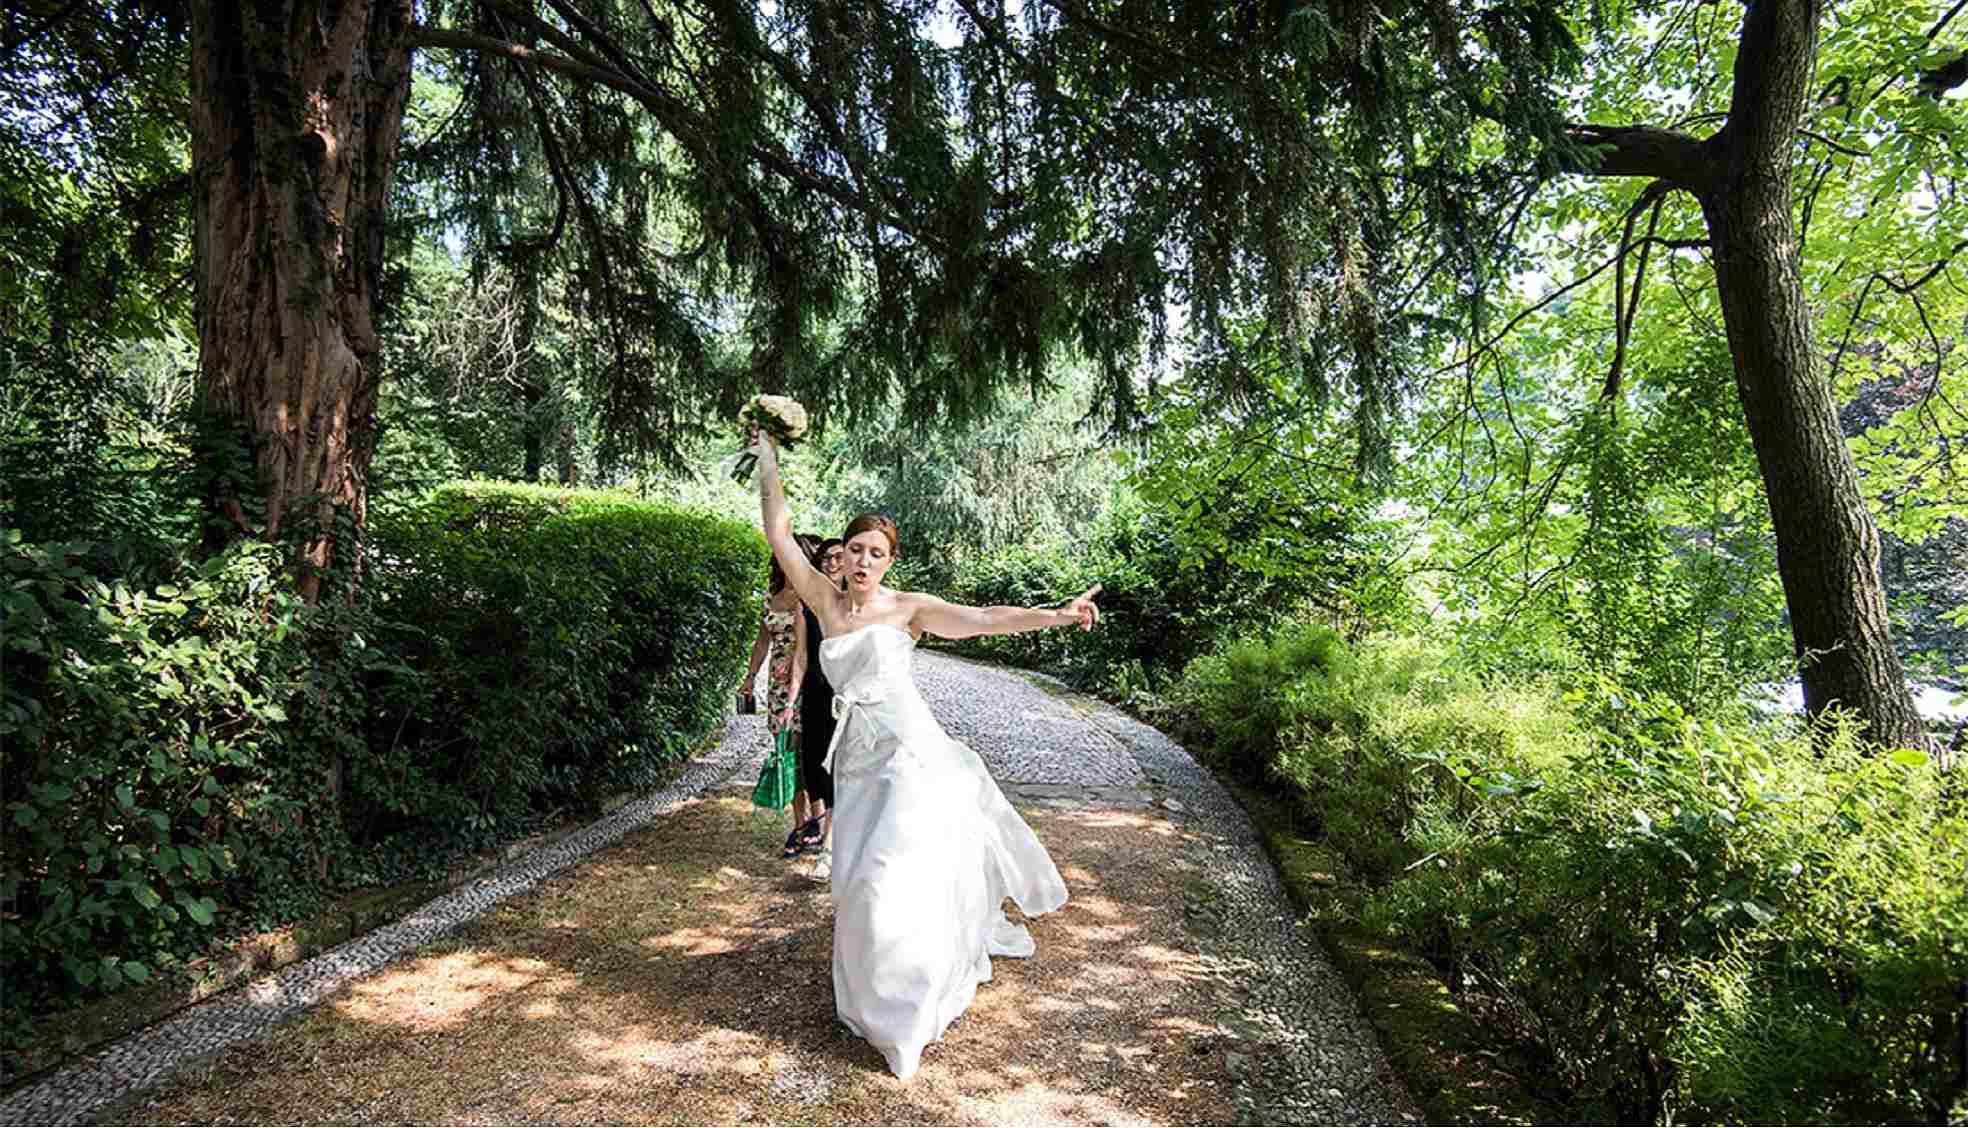 Sposa in location con giardino a Bergamo - Concessione di Photografica Mangili